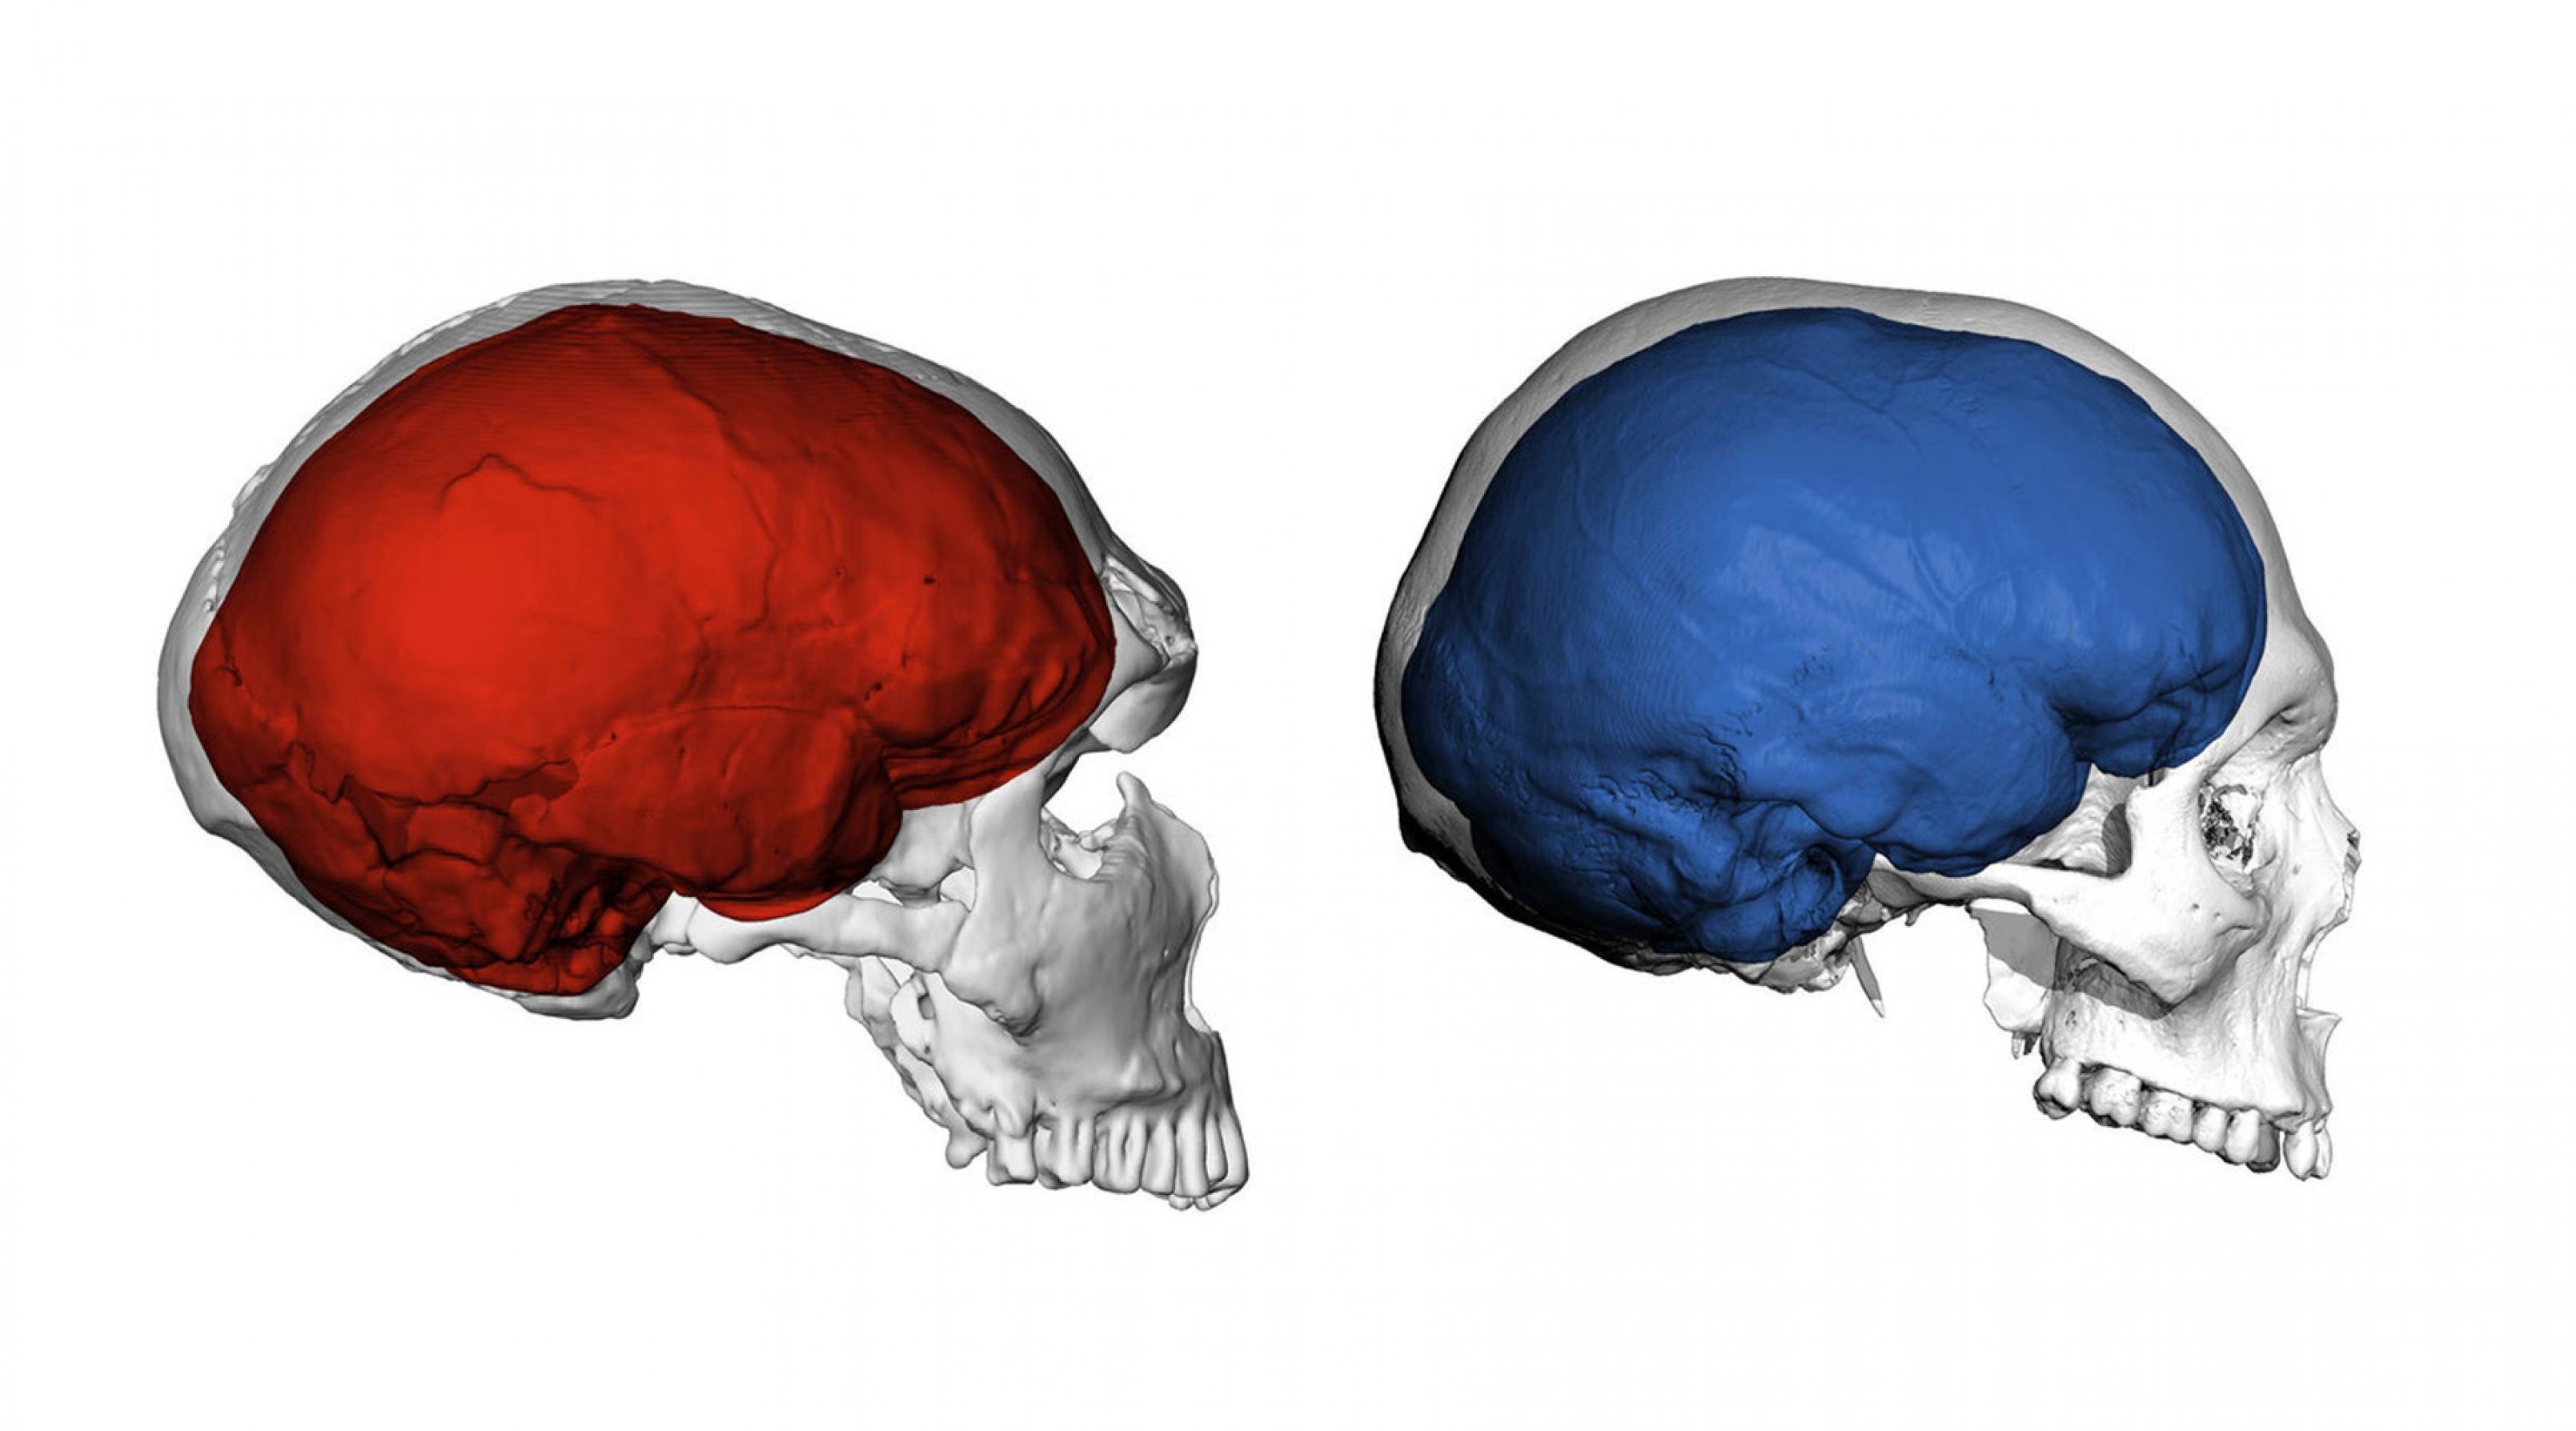 Die Abbildung zeigt links einen das computergenerierte Bild eines Neandertaler-Schädels von der Seite. Er ist langezogen und enthält eine rot gefärbte Darstellung vom Gehirn des Urmenschen. Rechts ist die entsprechende Ansicht eines Homo sapiens-Schädels zu sehen, dessen Gehirn blau dargestellt ist. Dessen Schädel und Gehirn sind fast rund, während sie beim Neandertaler länglich sind. Ein internationales Team aus Leipzig und Nijmegen, Niederlande, untersuchte jetzt, welchen Einfluss die Gene der Neandertaler auf die Hirnstruktur heutiger Menschen haben.